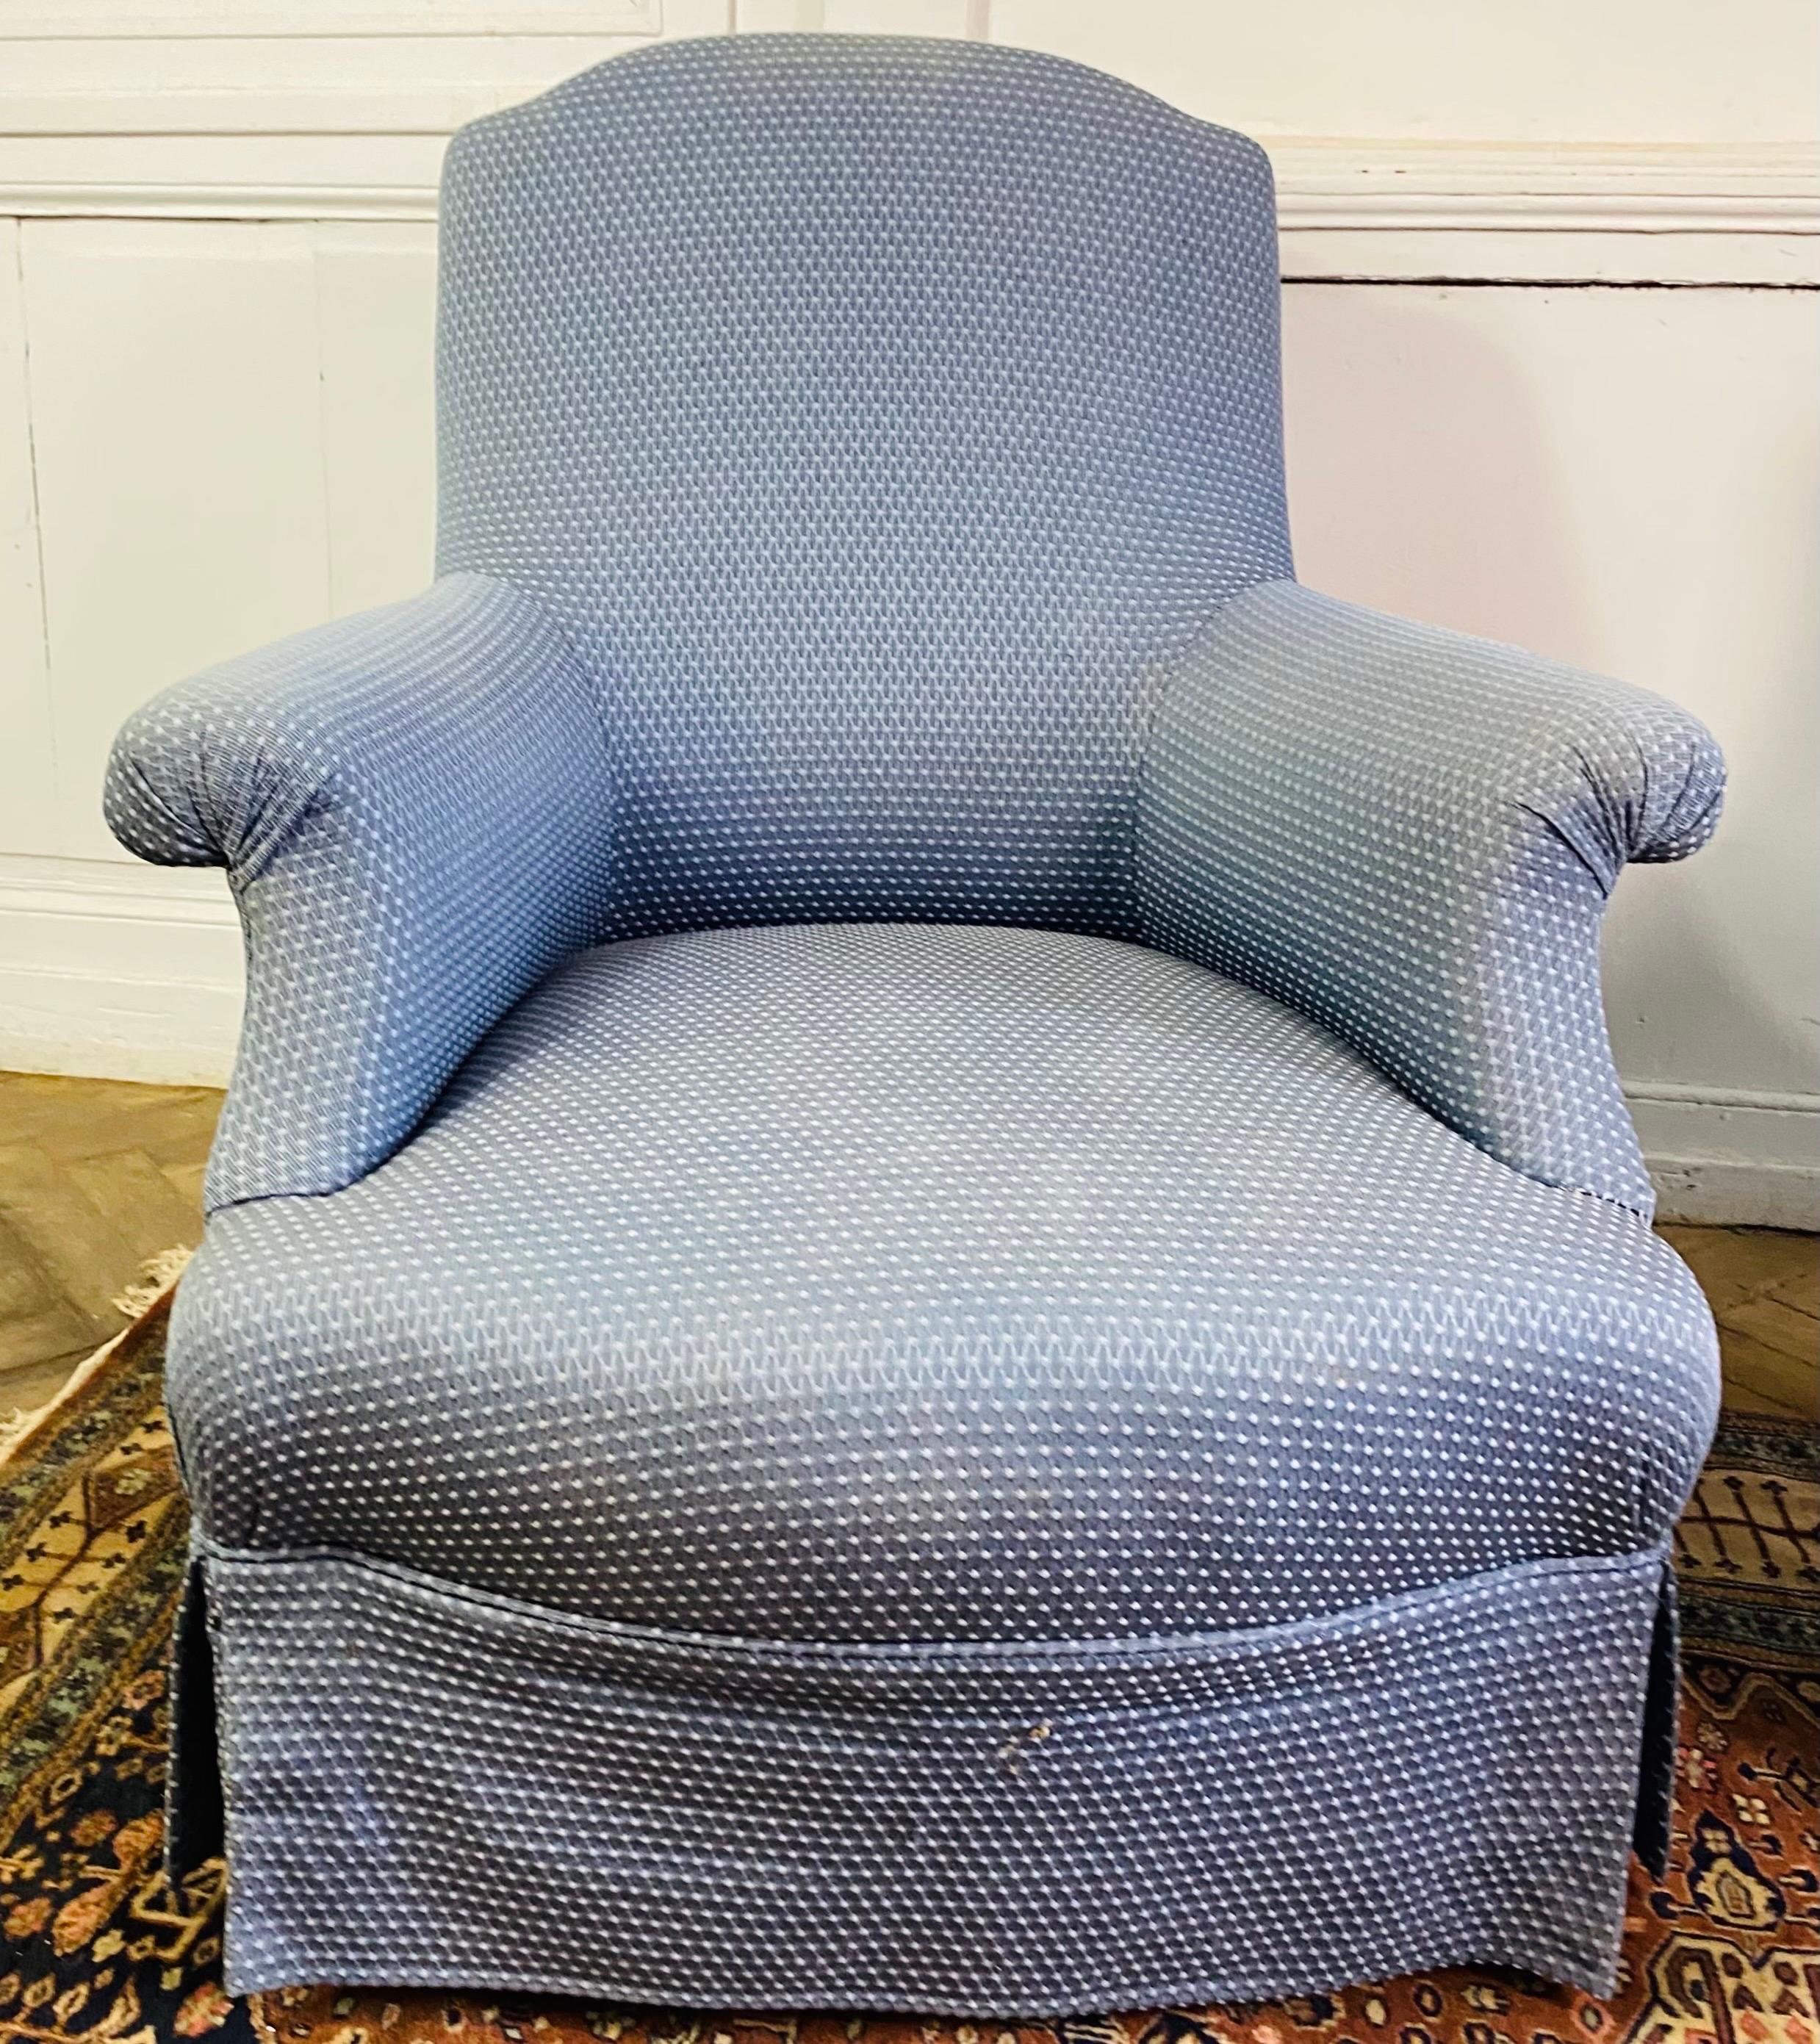 Très jolie paire de fauteuils de salon d'époque Napoléon III (milieu du XIXème siècle), recouverts d'un beau tissu bleu. Il ne s'agit pas d'une paire identique mais les deux fauteuils sont entièrement recouverts d'une tapisserie assortie. L'un est